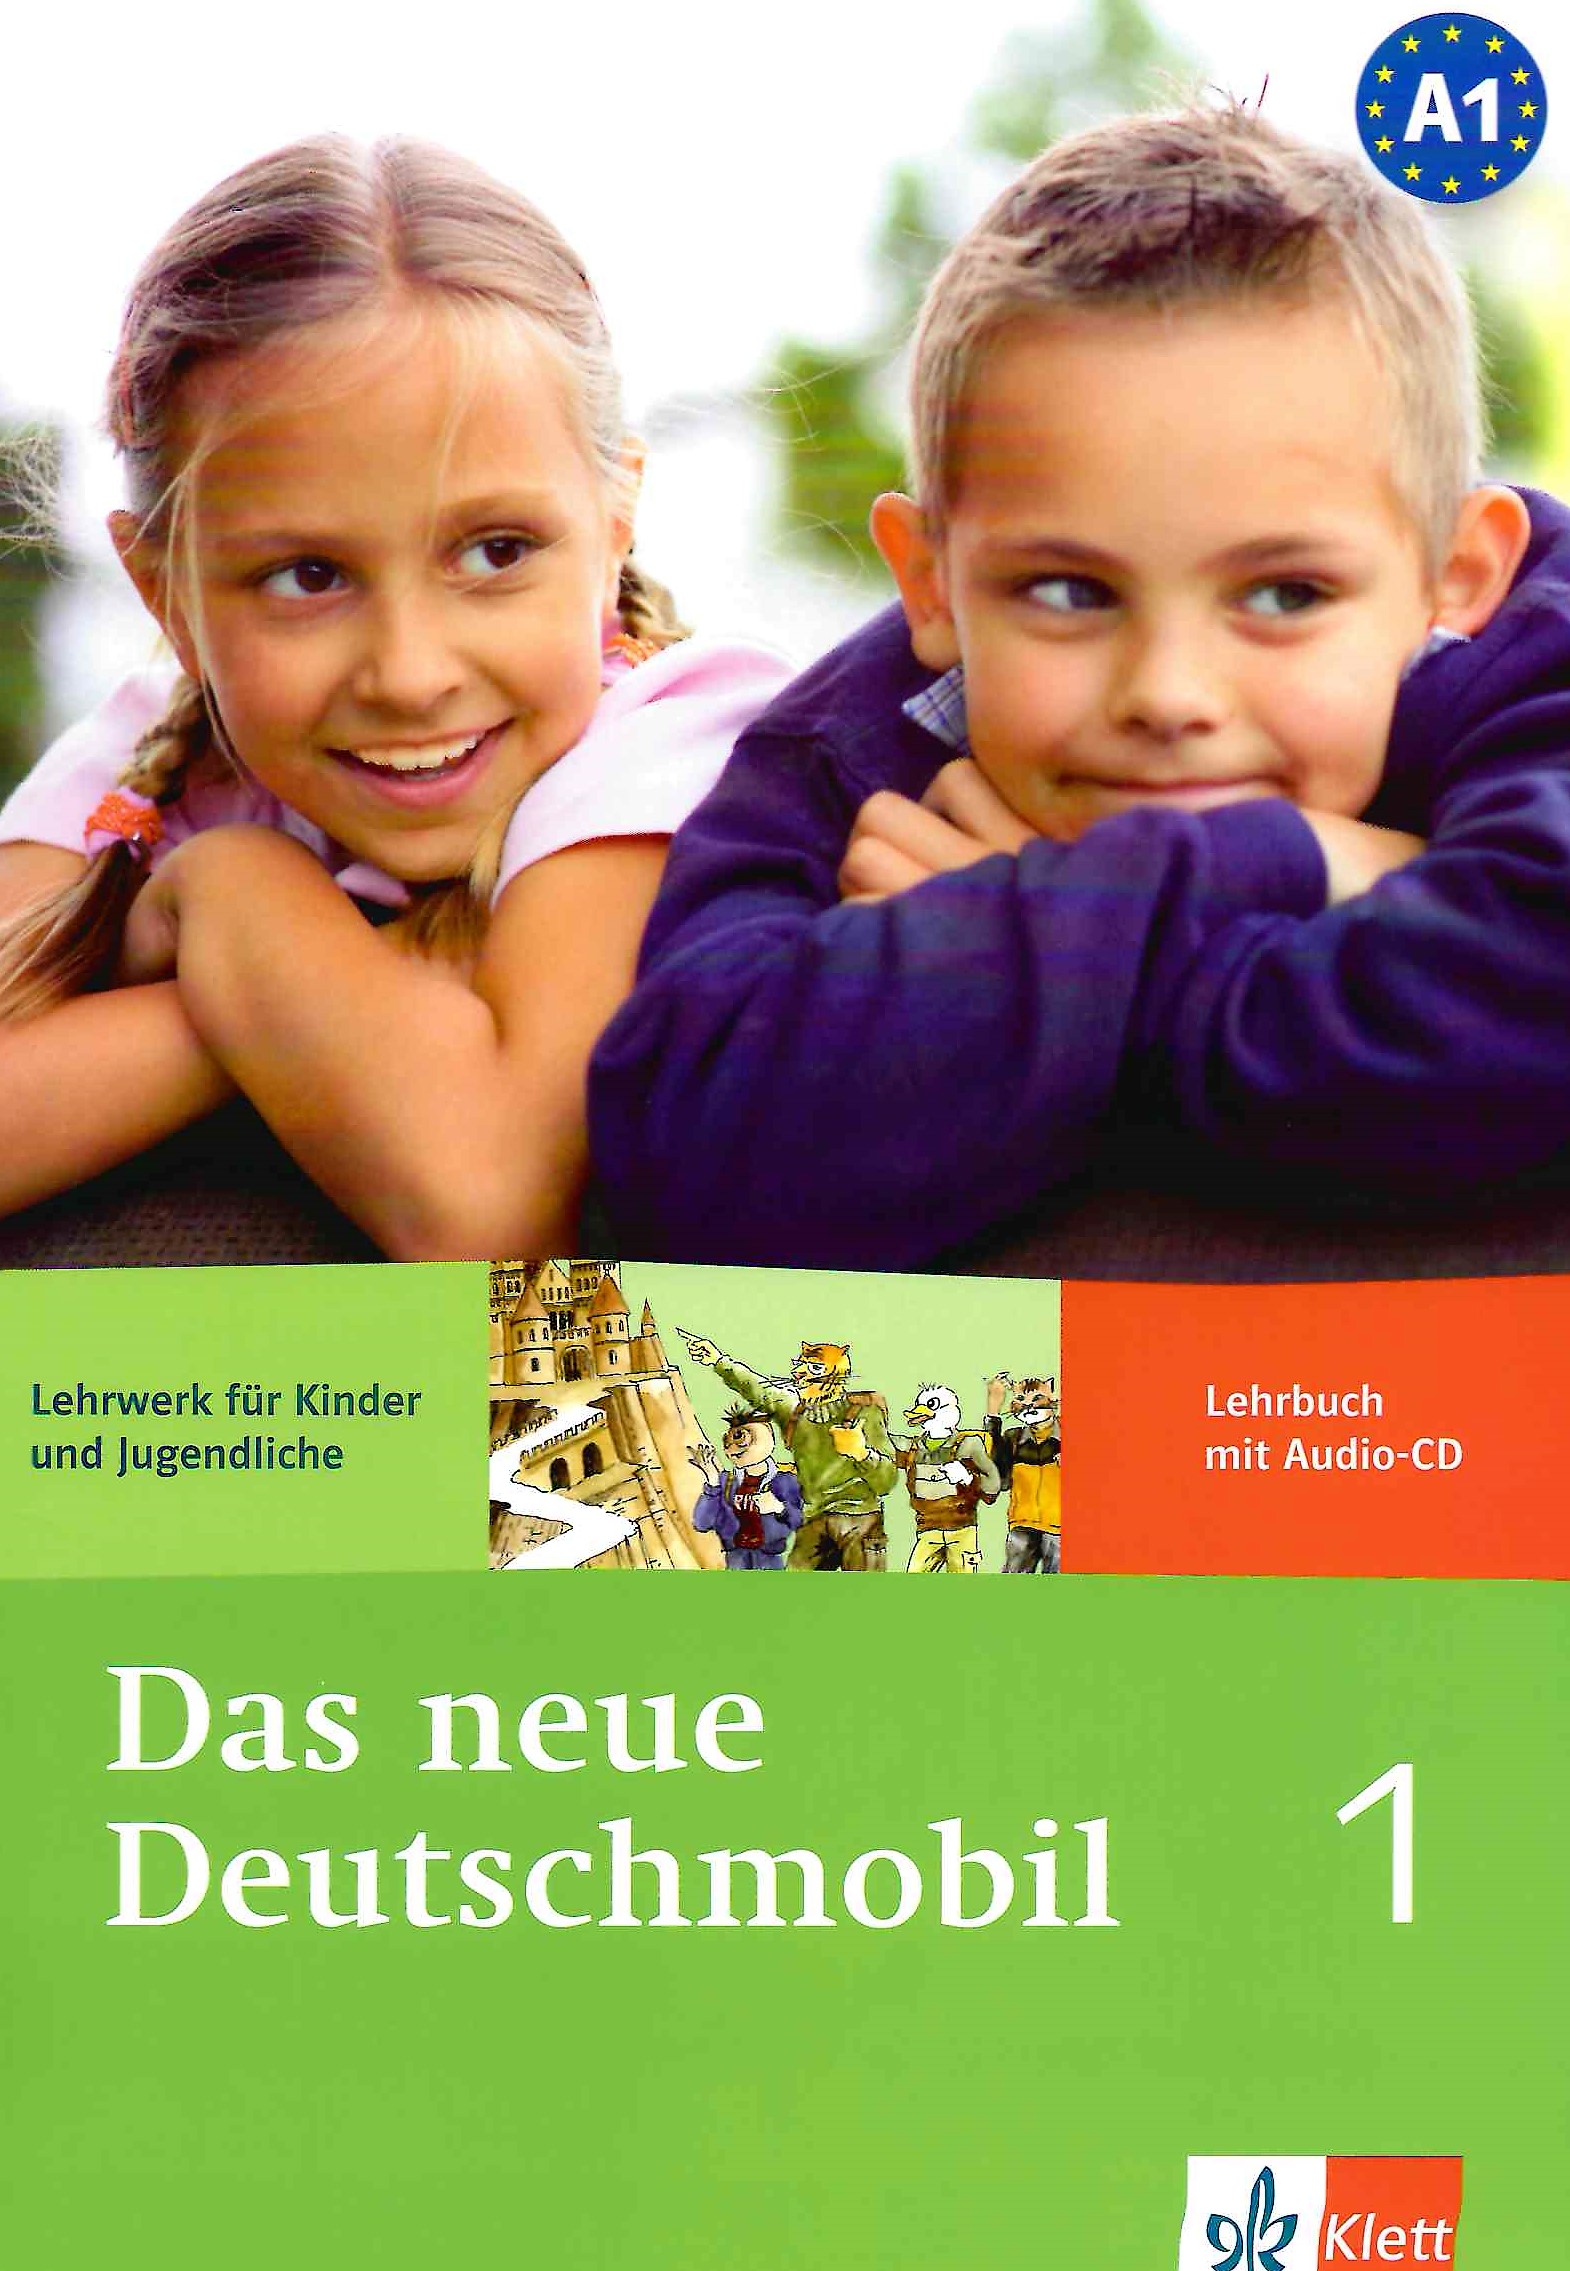 Немецкий язык аудио учебник. Das Deutschmobil учебник. Учебник по немецкому языку. Учебник немецкого. Учебники немецкого языка для школьников.